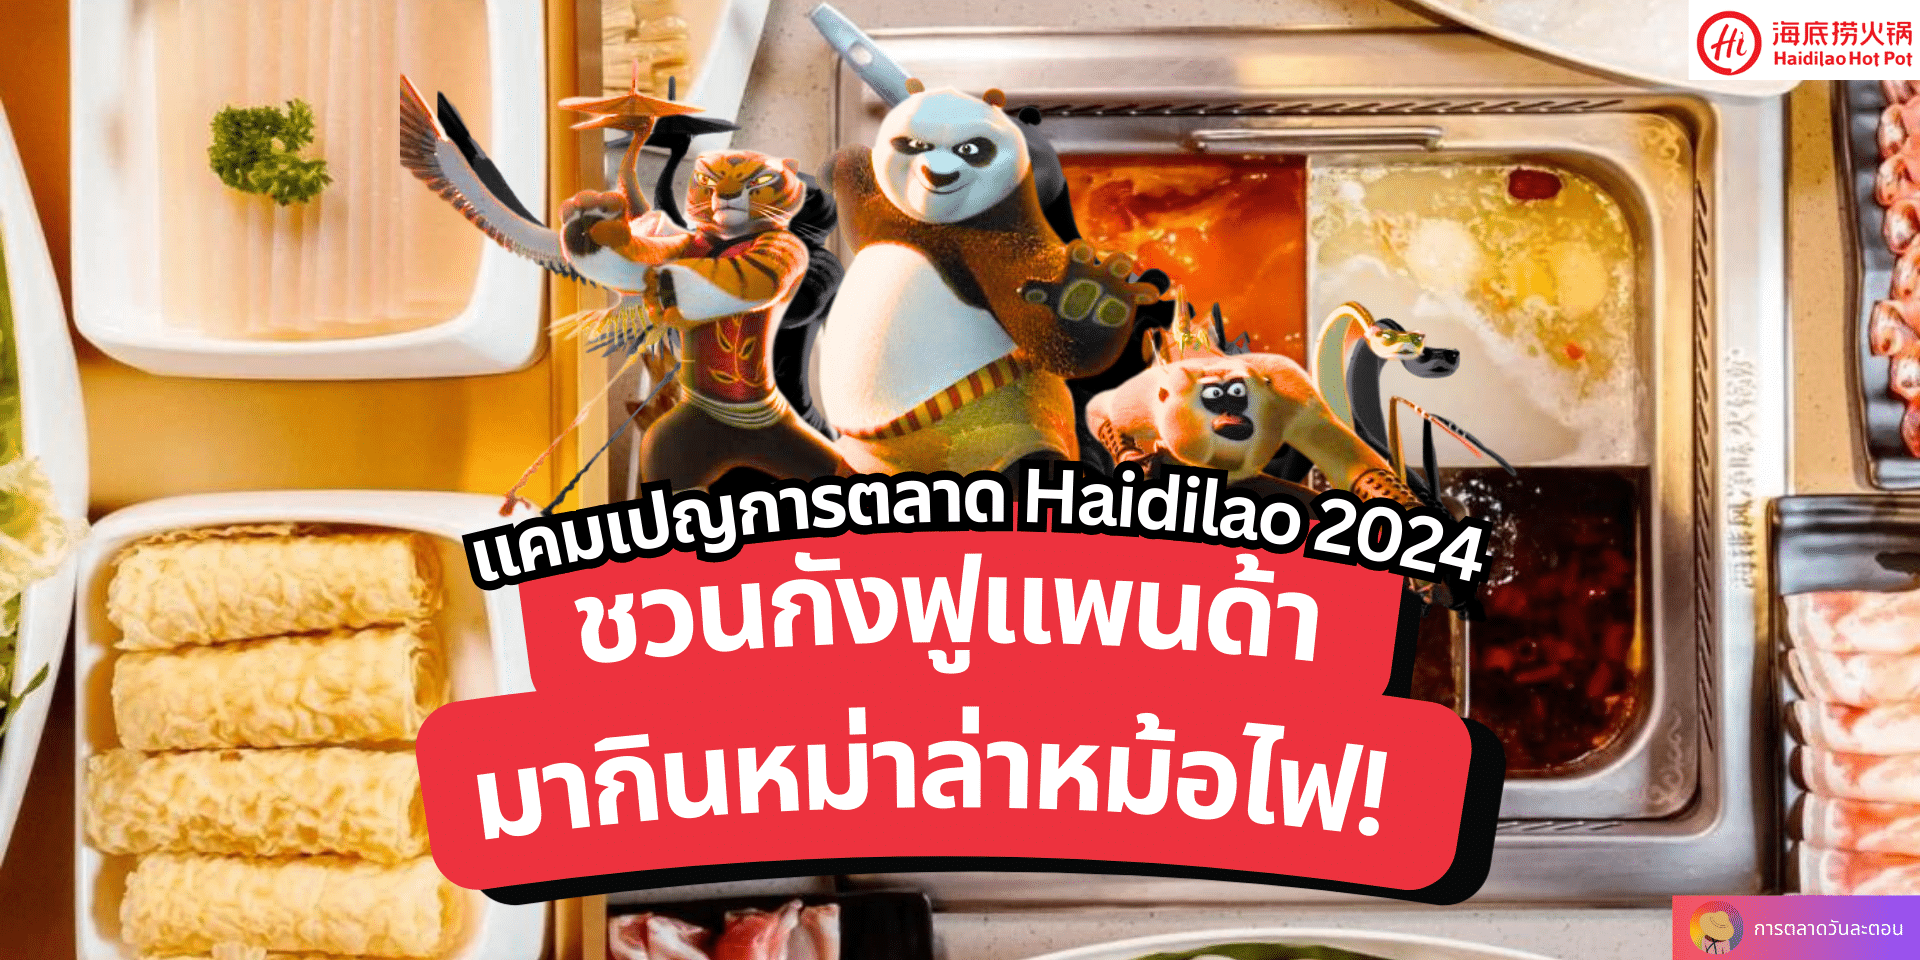 แคมเปญการตลาด Haidilao 2024 ชวนกังฟูแพนด้ามากินหม่าล่าหม้อไฟ